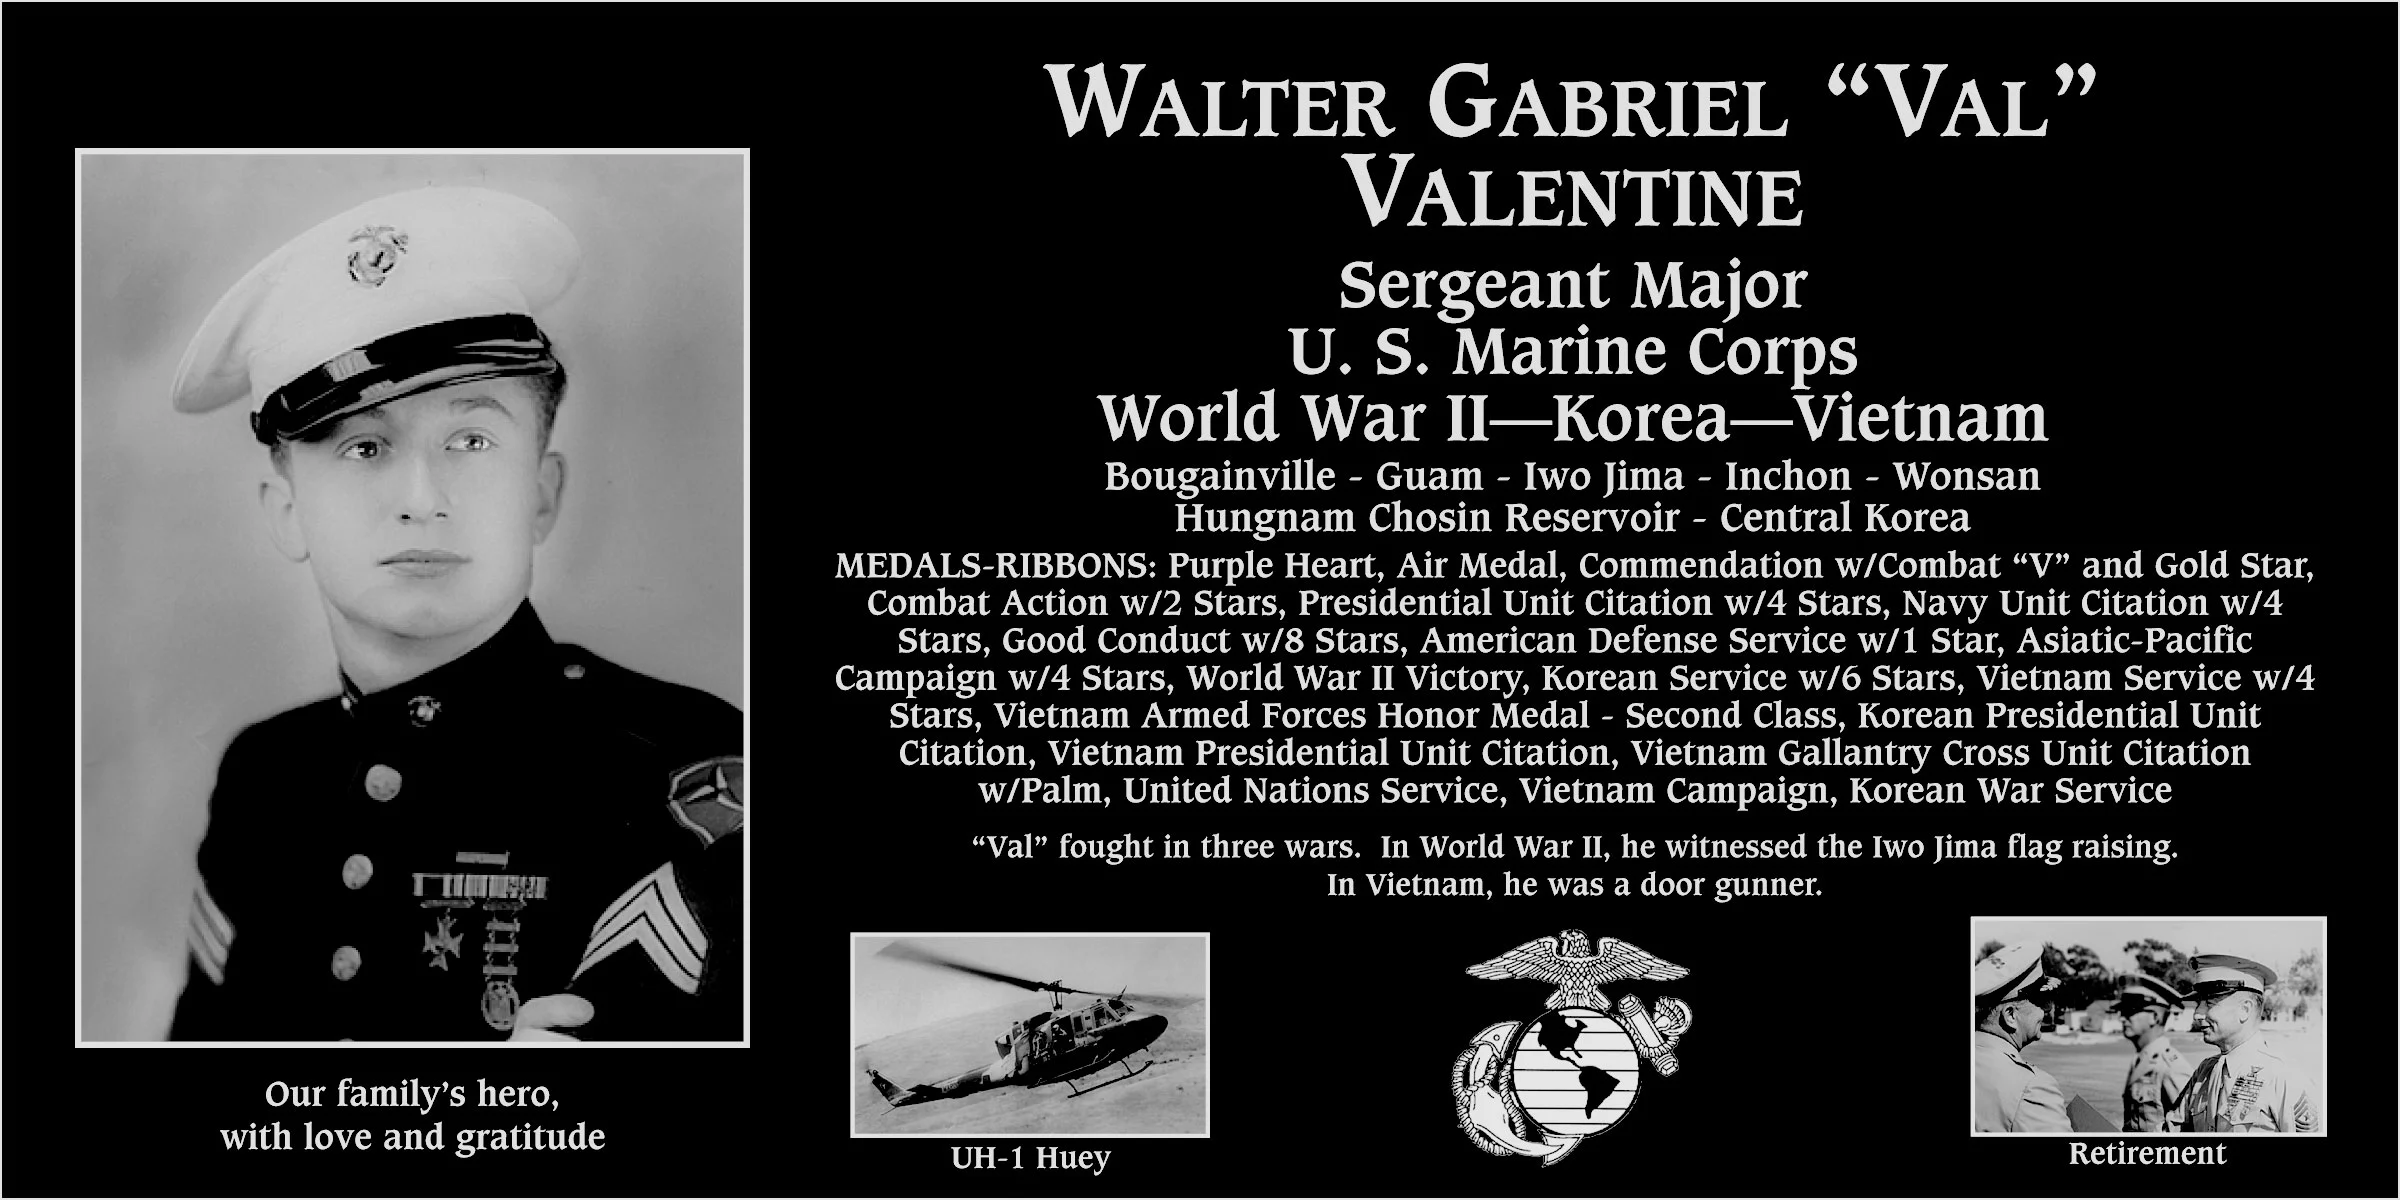 Walter Gabriel “Val” Valentine